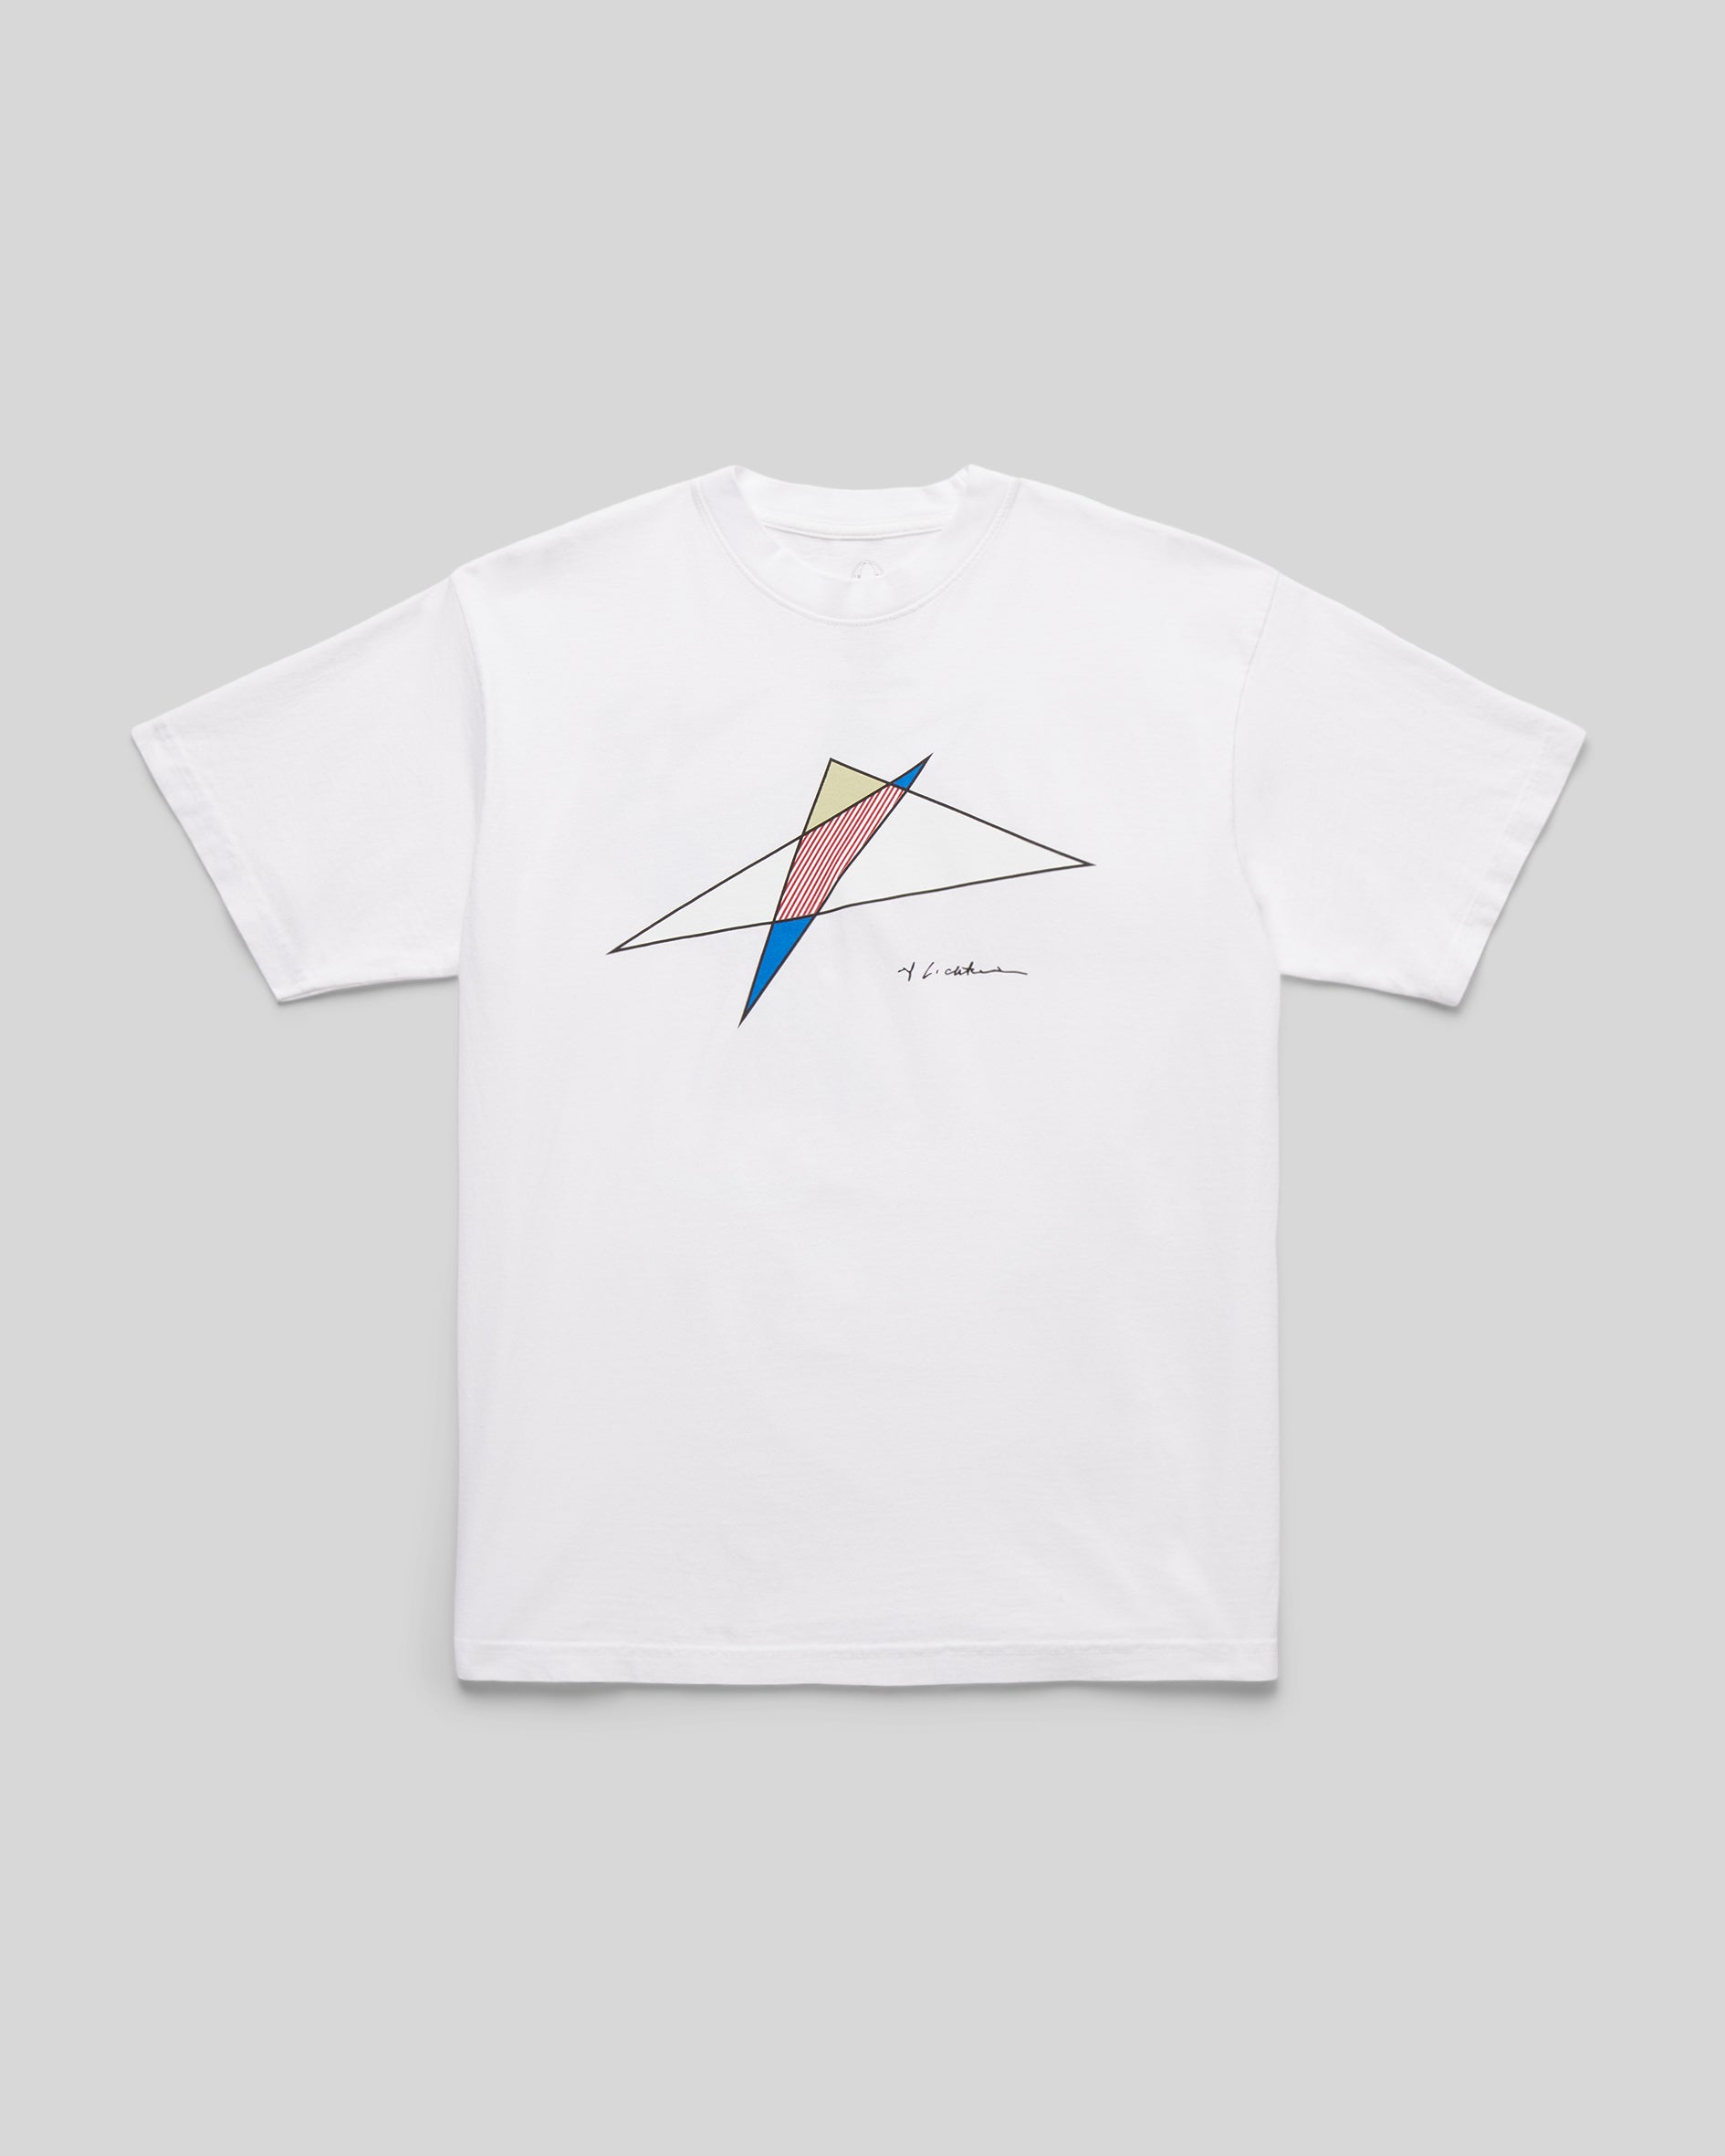 Lichtenstein Perfect/Imperfect Extraction T-Shirt